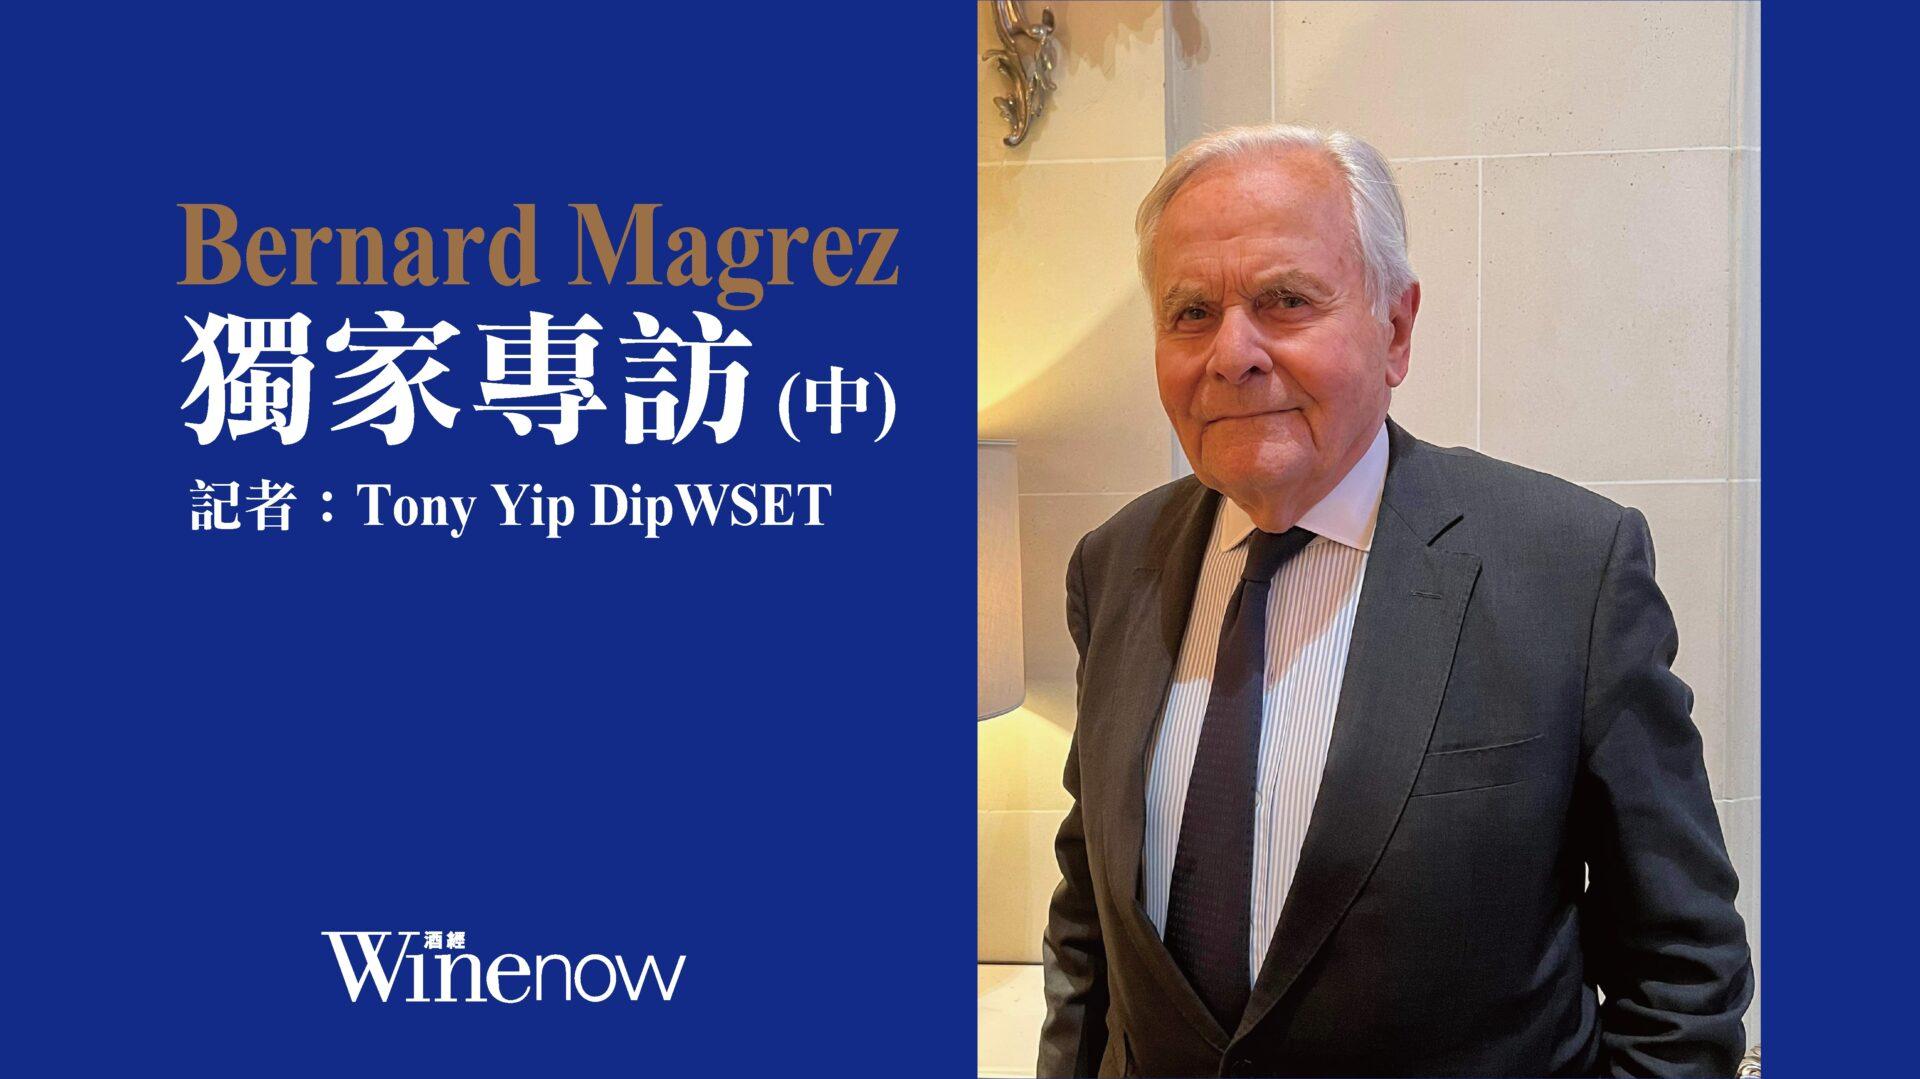 獨家專訪「雙金匙」酒業大亨 Bernard Magrez (中) - WineNow HK 專欄文章